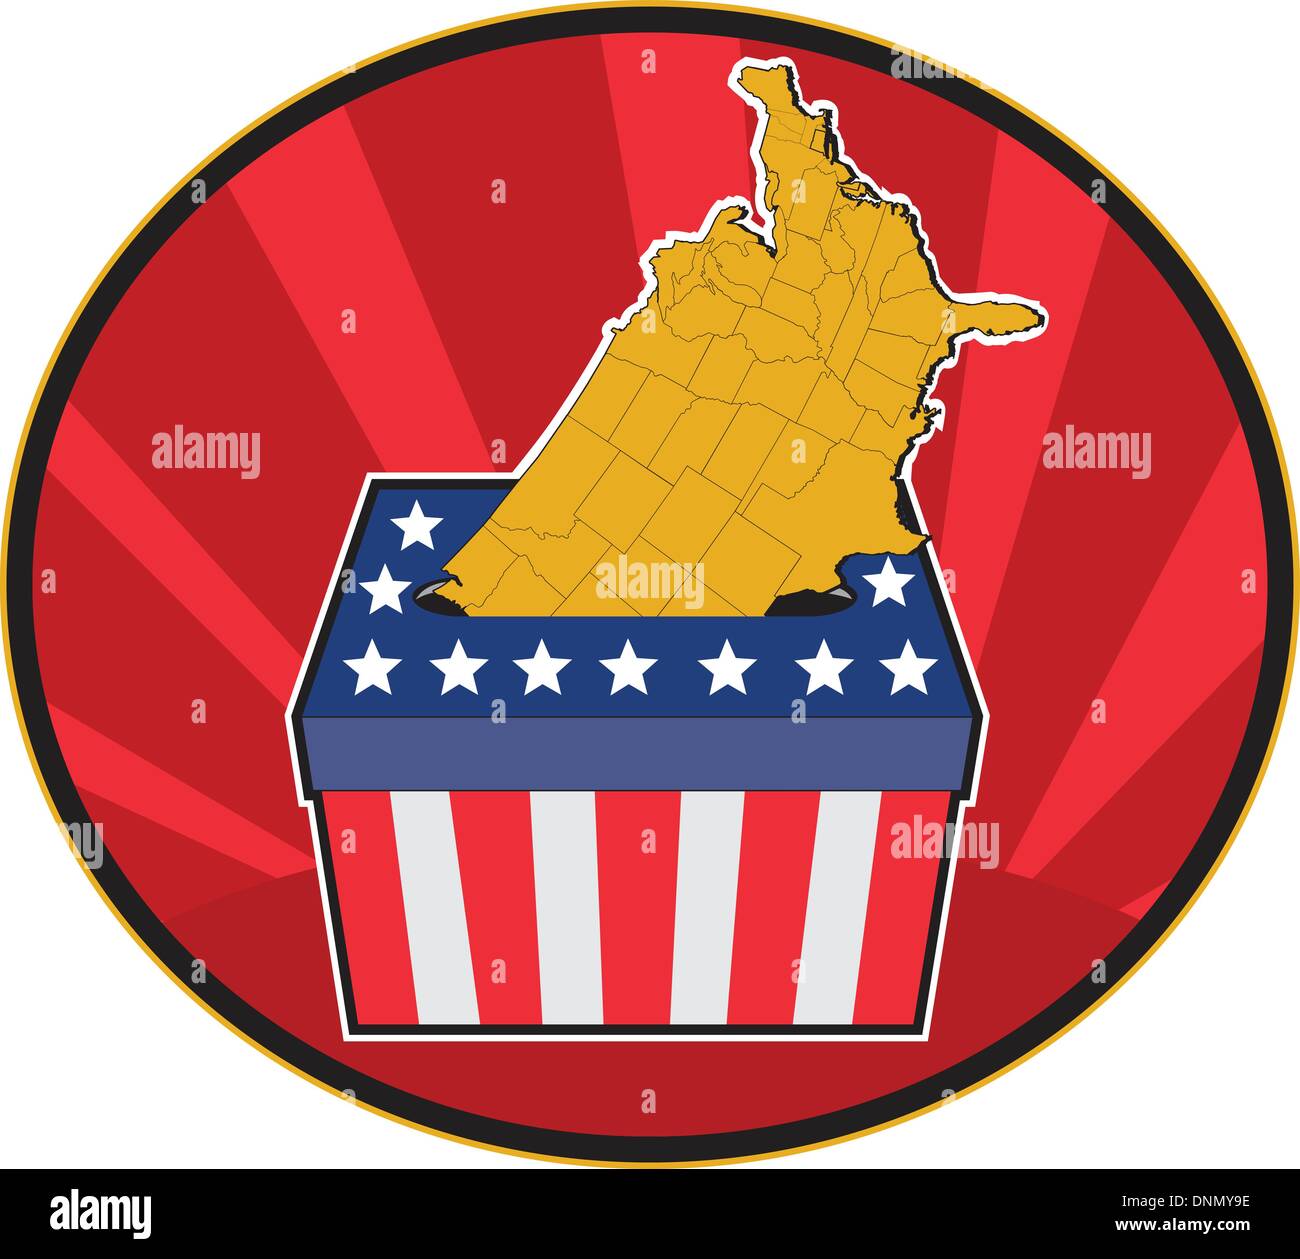 Illustration d'une urne électorale avec American stars and stripes drapeau et carte des États-Unis d'Amérique a l'intérieur d'une ellipse avec la solarisation en arrière-plan Illustration de Vecteur